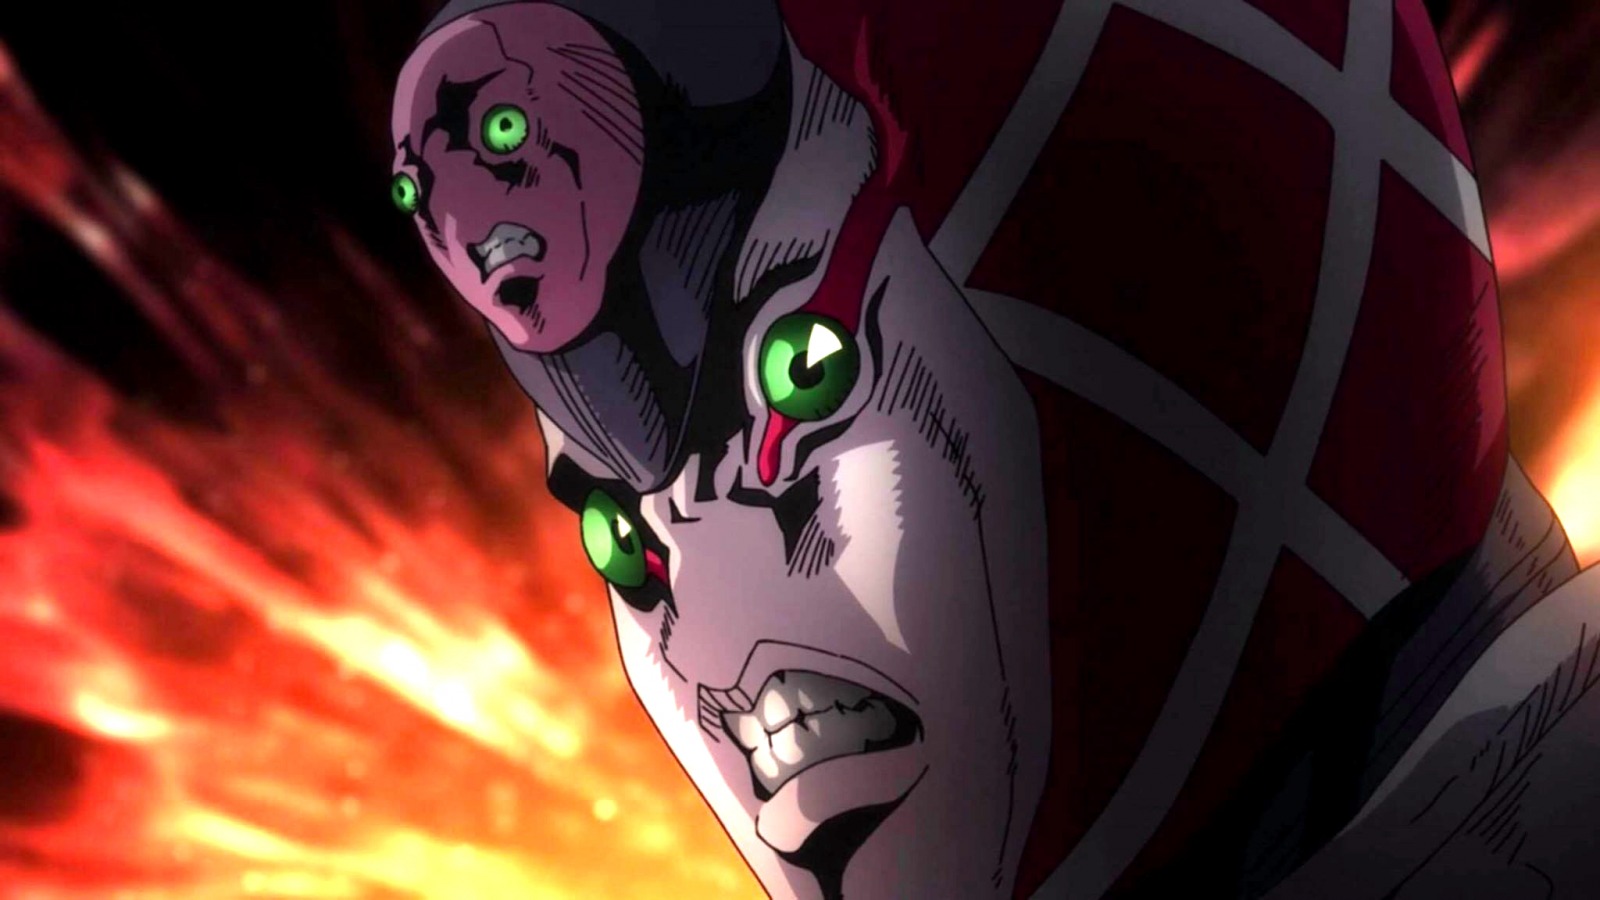 In JoJo's Bizarre adventure, how does Emperor Crimson stand work? - Quora